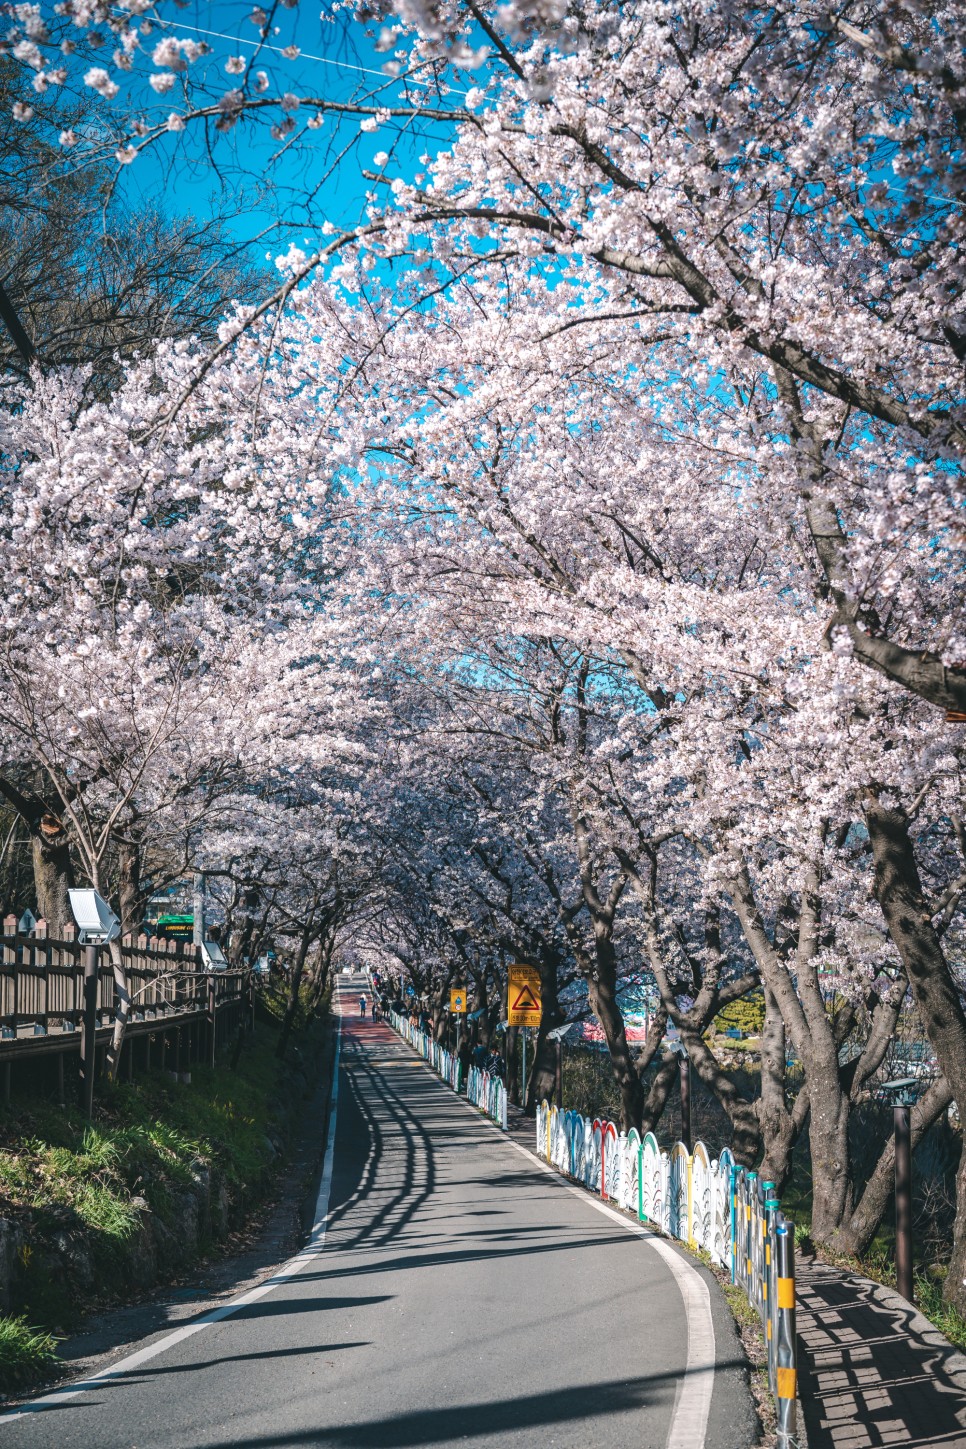 [하동 여행 코스] 천천히 봄을 즐길 수 있는, 하동 봄 여행 :: 최참판댁, 쌍계사 십 리 벚꽃길, 스타웨이하동, 화개장터, 하동 가볼 만한 곳